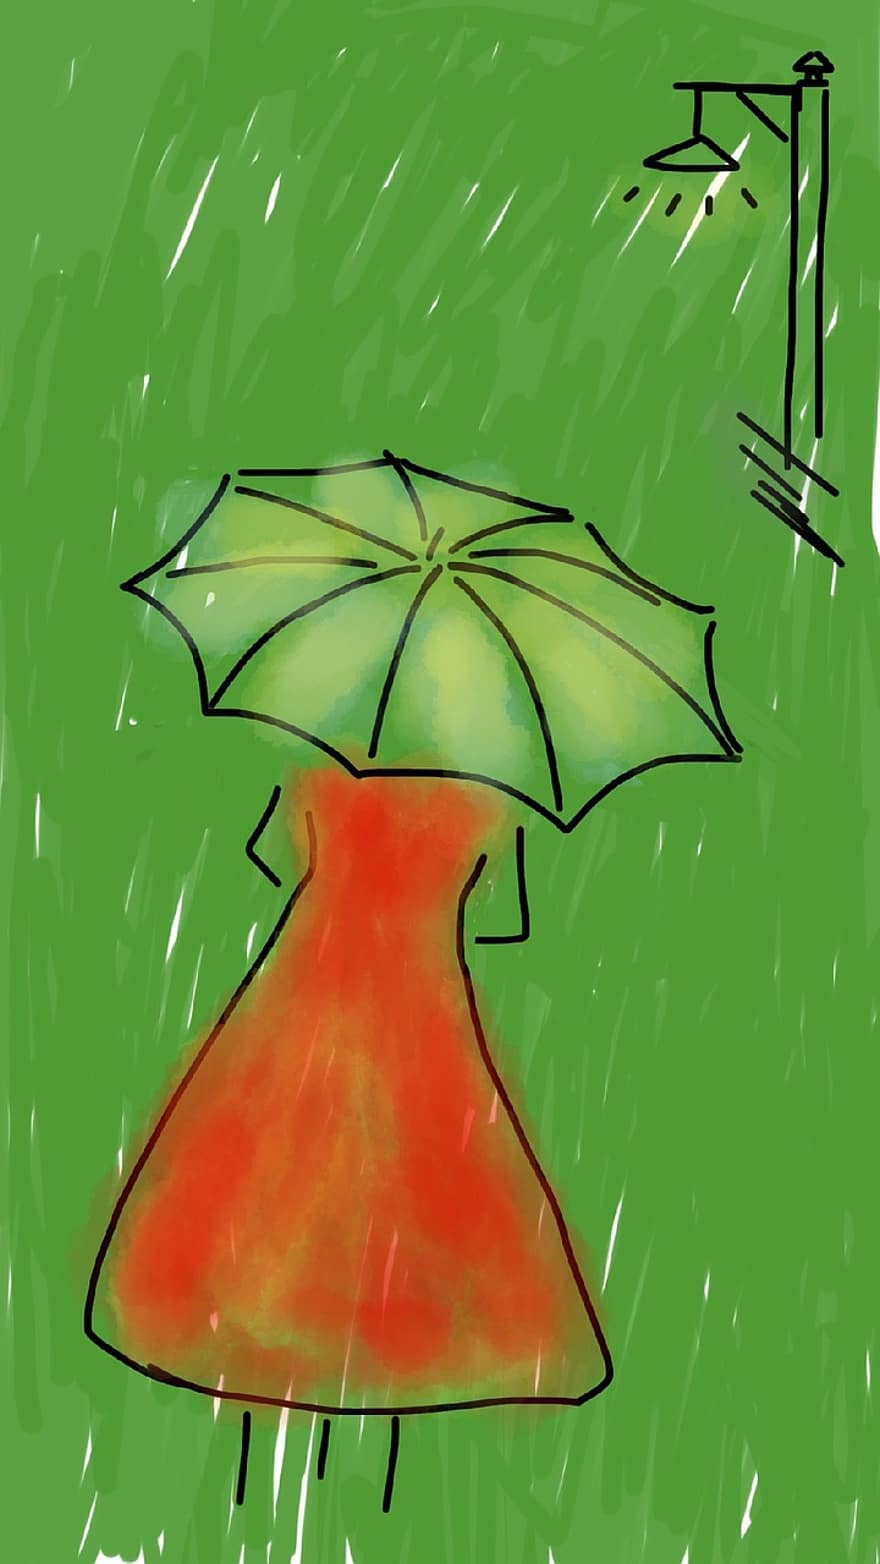 หญิง, ร่ม, ฝน, ฝนตก, ชุดสีแดง, ถนน, ที่เดิน, หนุ่มสาว, สีเขียว, ไฟถนน, กลางแจ้ง